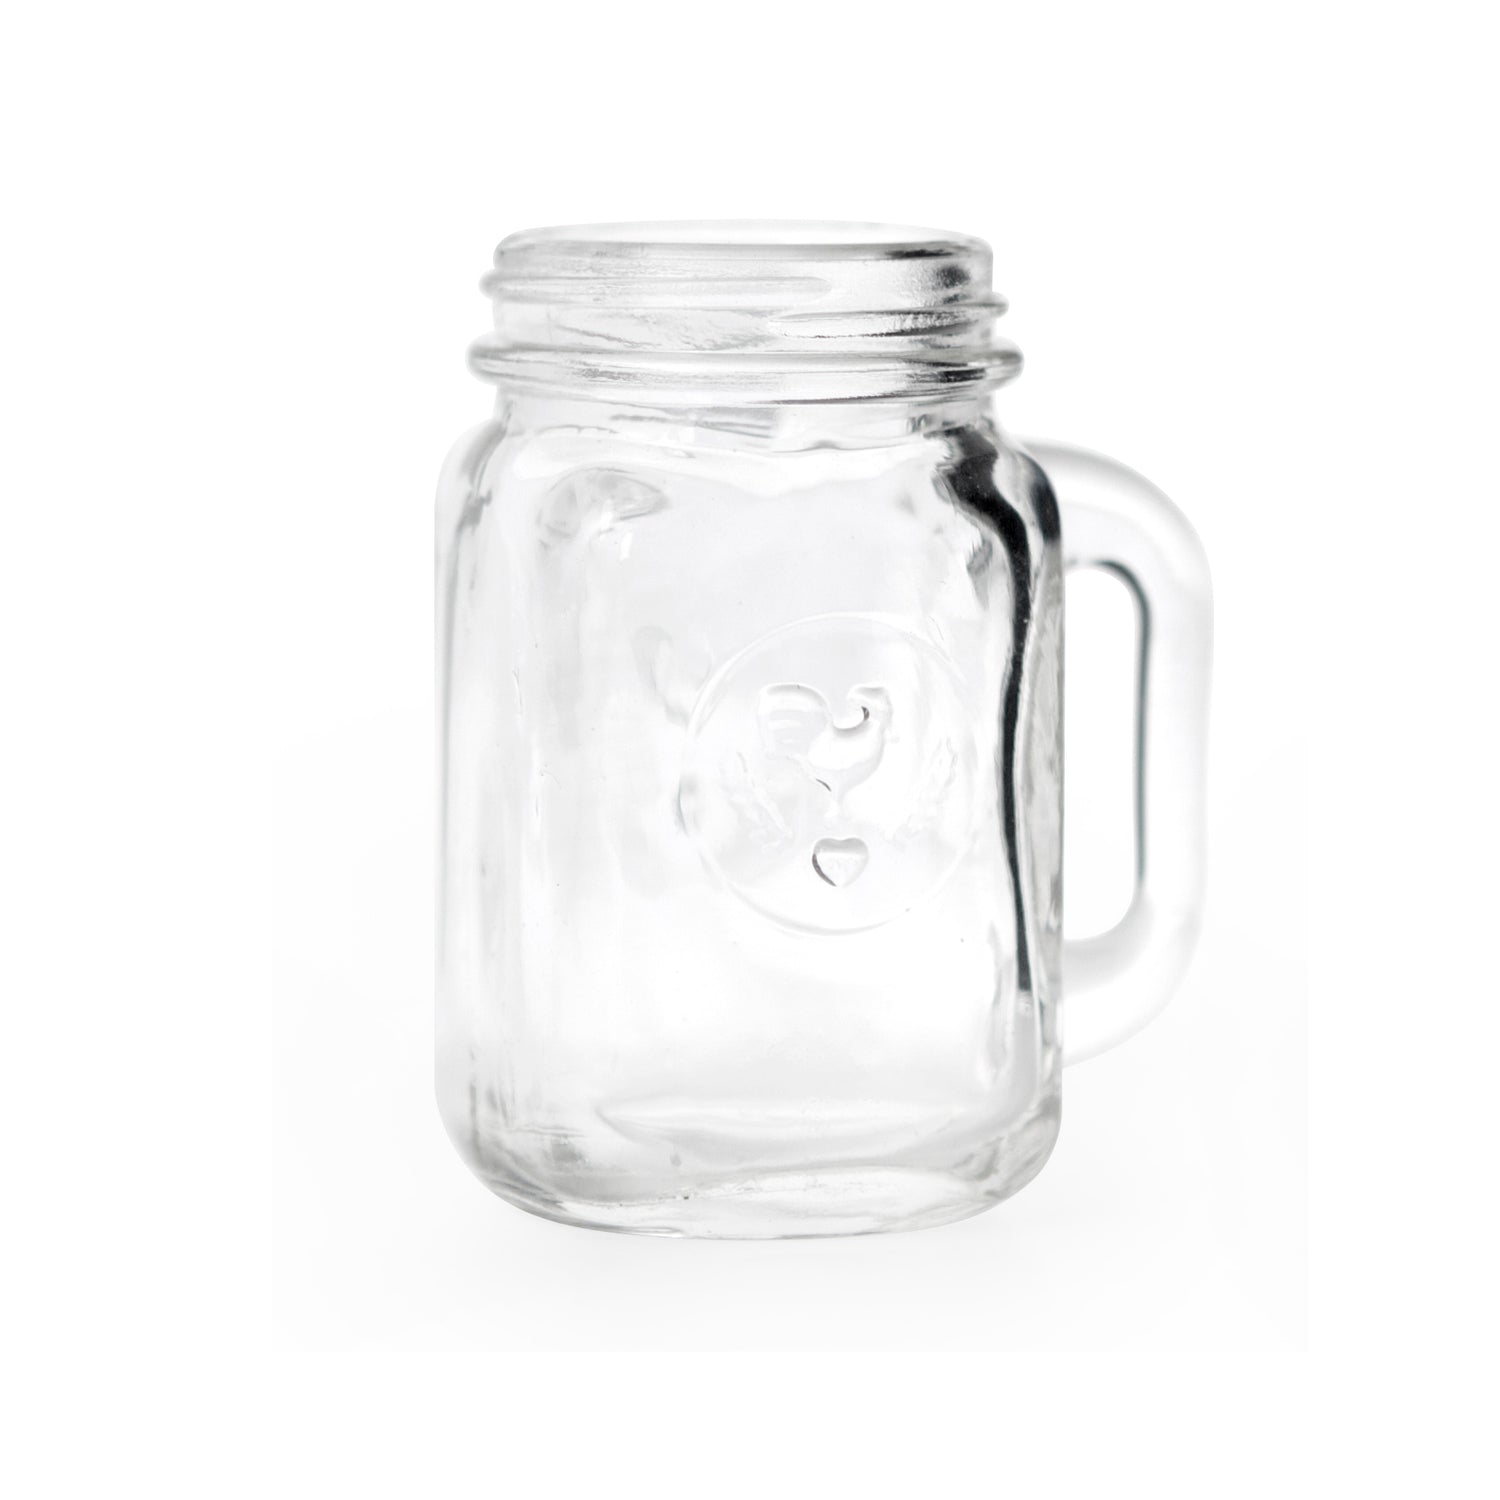 Mason Jar borrelglas